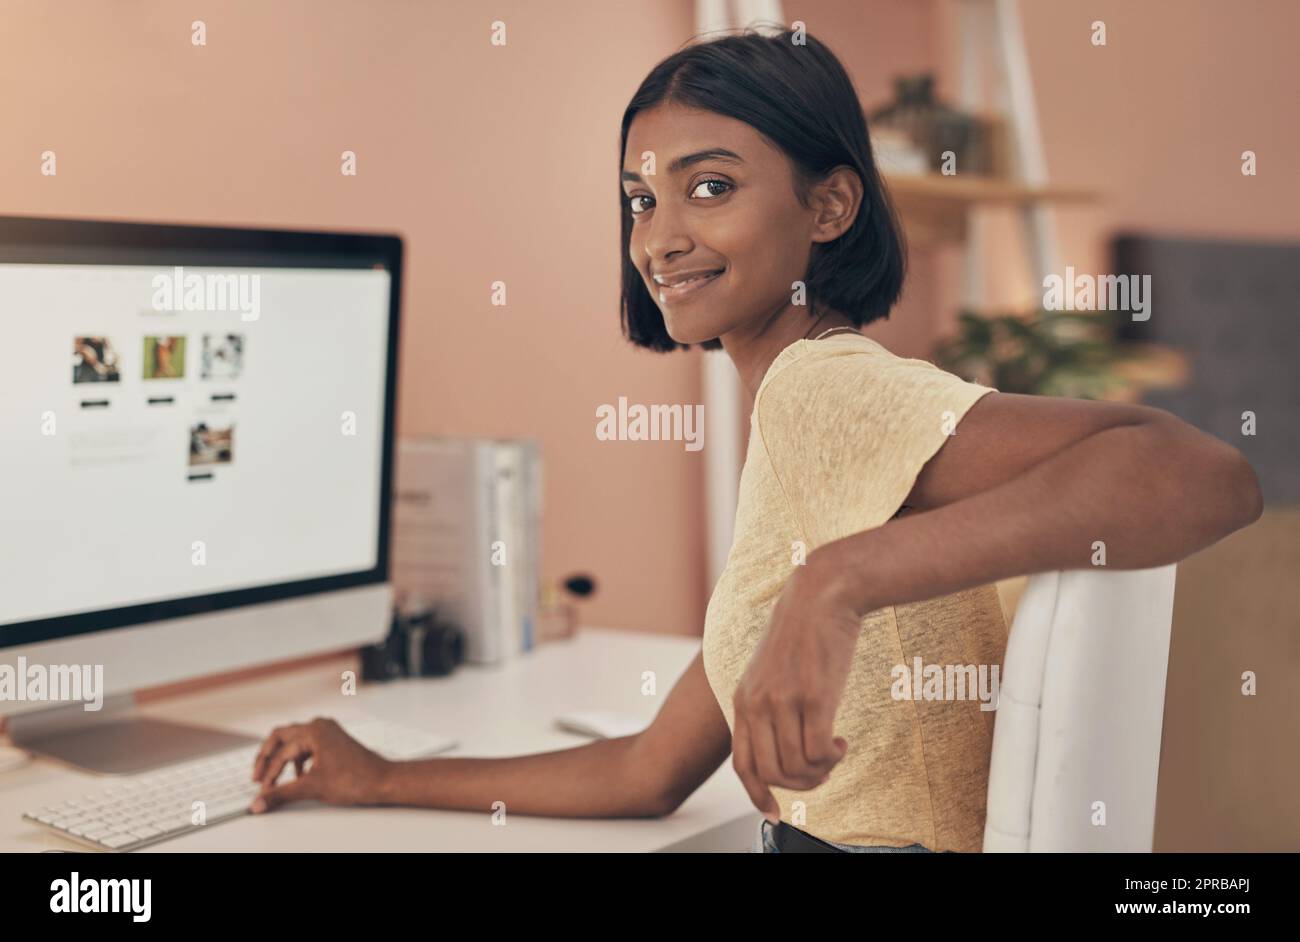 Erste Regel der Arbeit von zu Hause aus erhalten einige gute WiFi. Porträt einer jungen Frau, die einen Computer benutzt, während sie von zu Hause aus arbeitet. Stockfoto